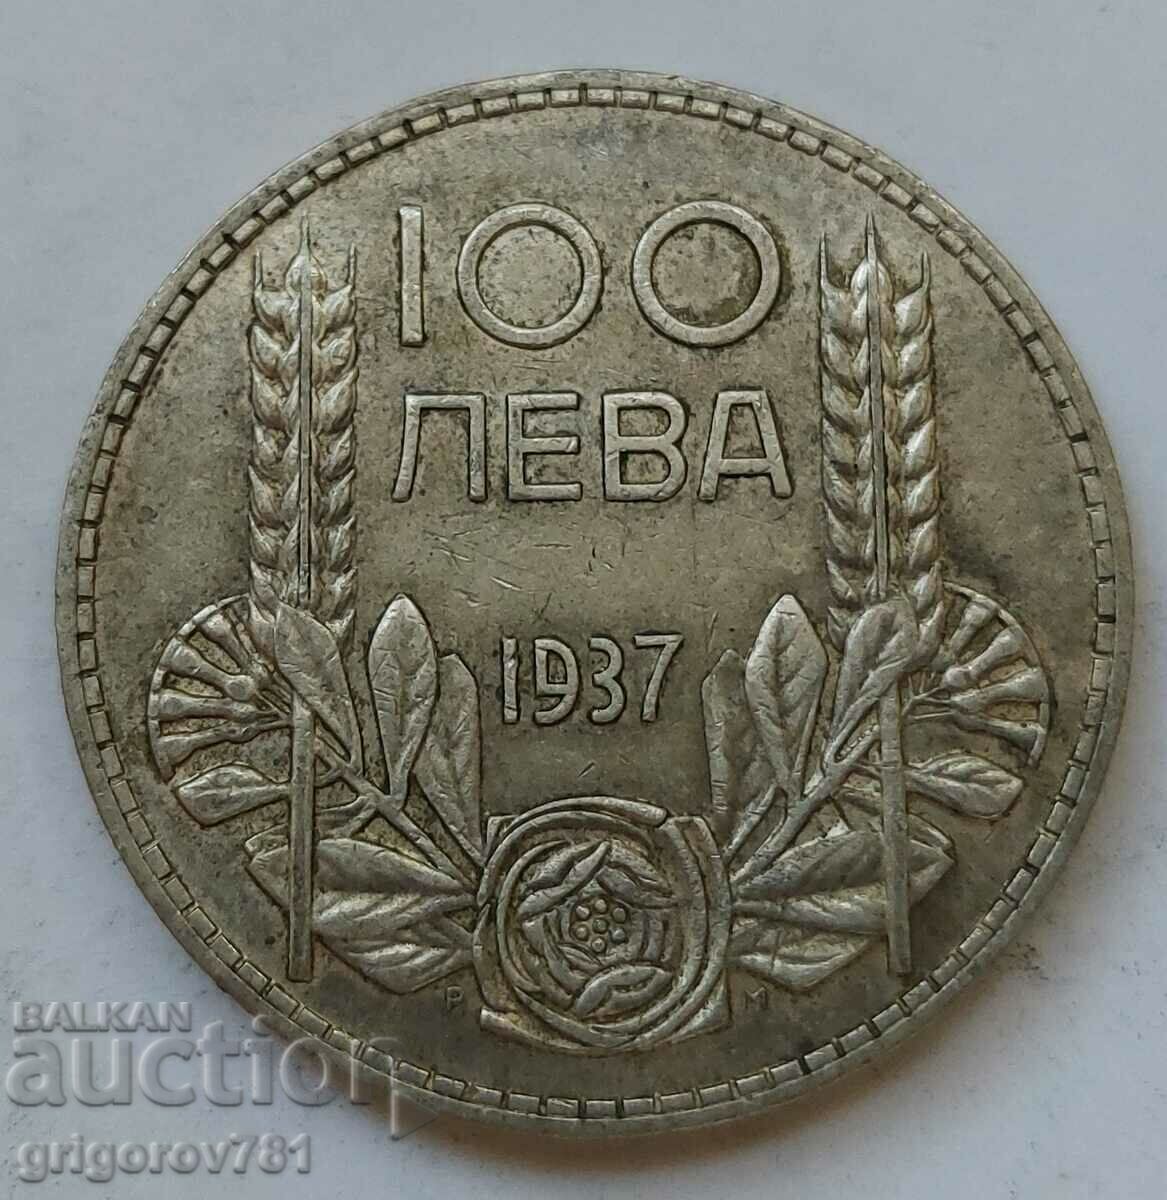 100 leva silver Bulgaria 1937 - silver coin #139